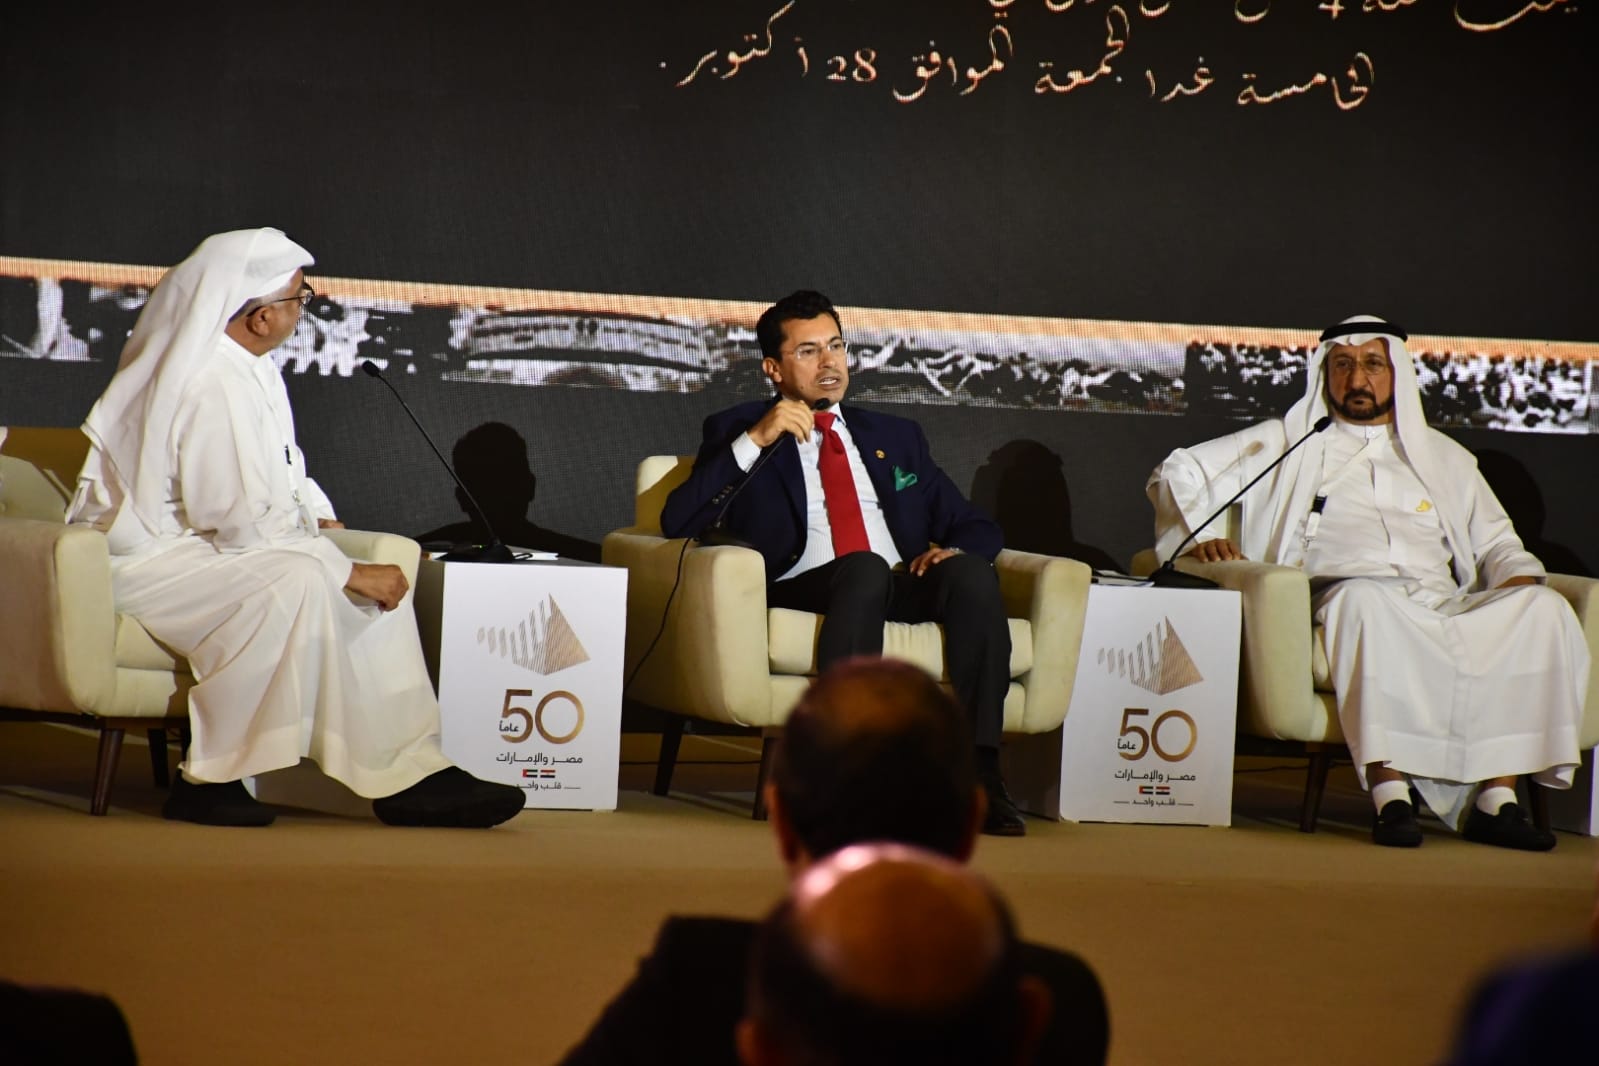 وزير الرياضة يشارك في جلسة نقاشية حول تاريخ العلاقات الرياضية الإماراتية المصرية  (2) - Copy